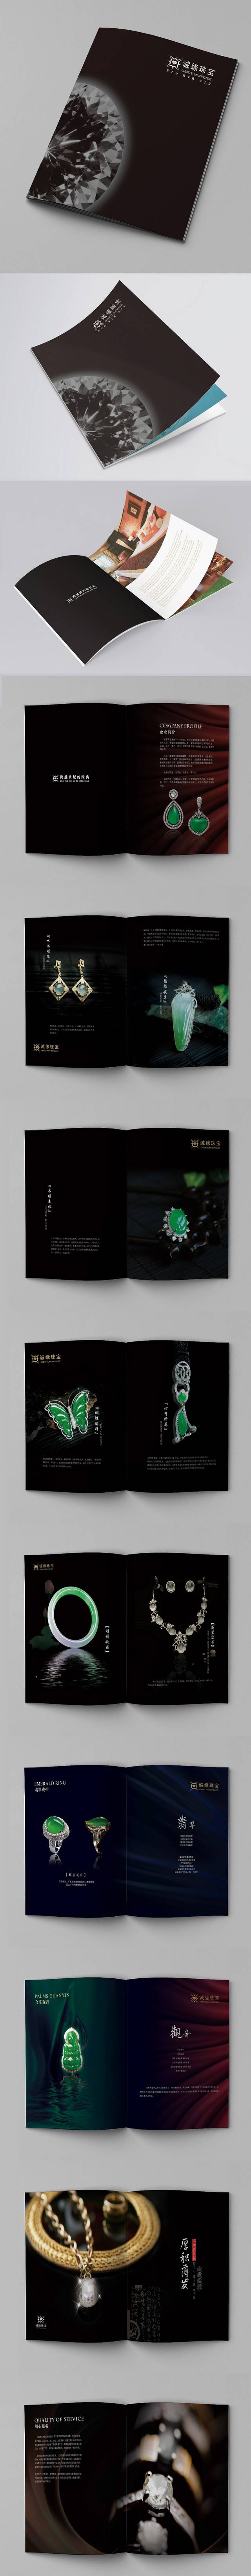 翡翠珠宝宣传画册设计